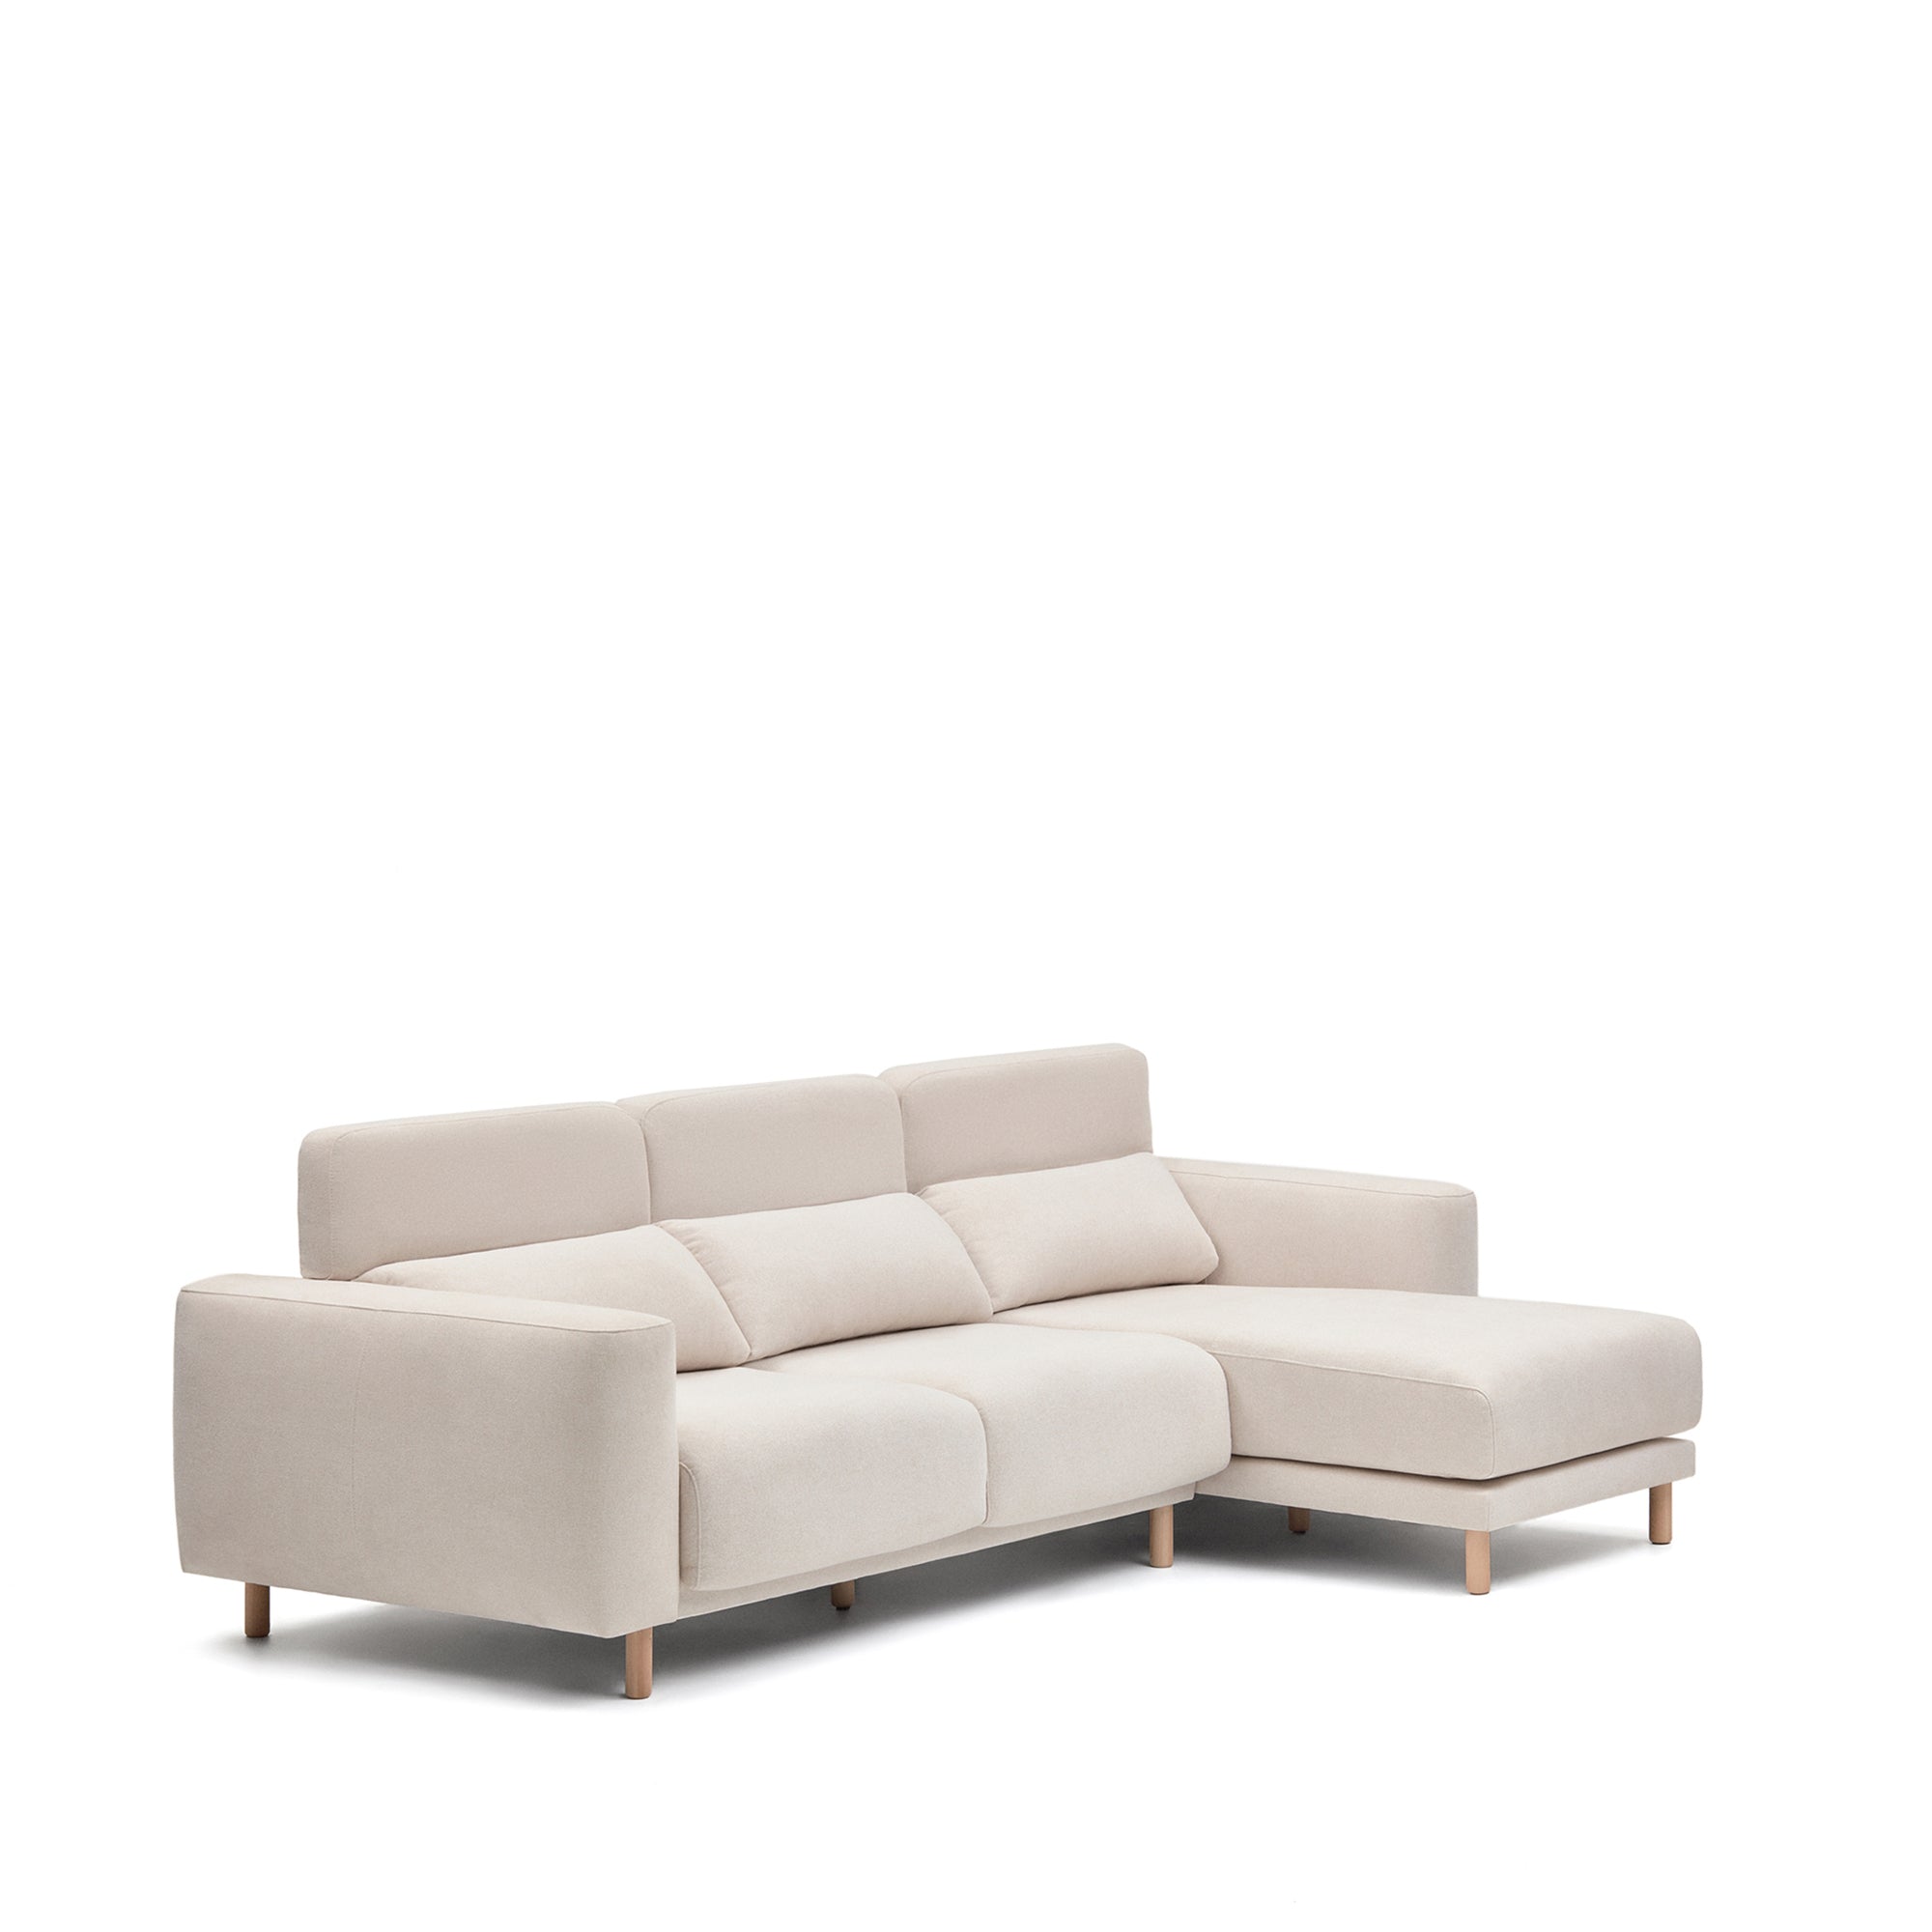 Singa 3 személyes kanapé jobb oldali fekvőfotellel, fehér színben, 296 cm